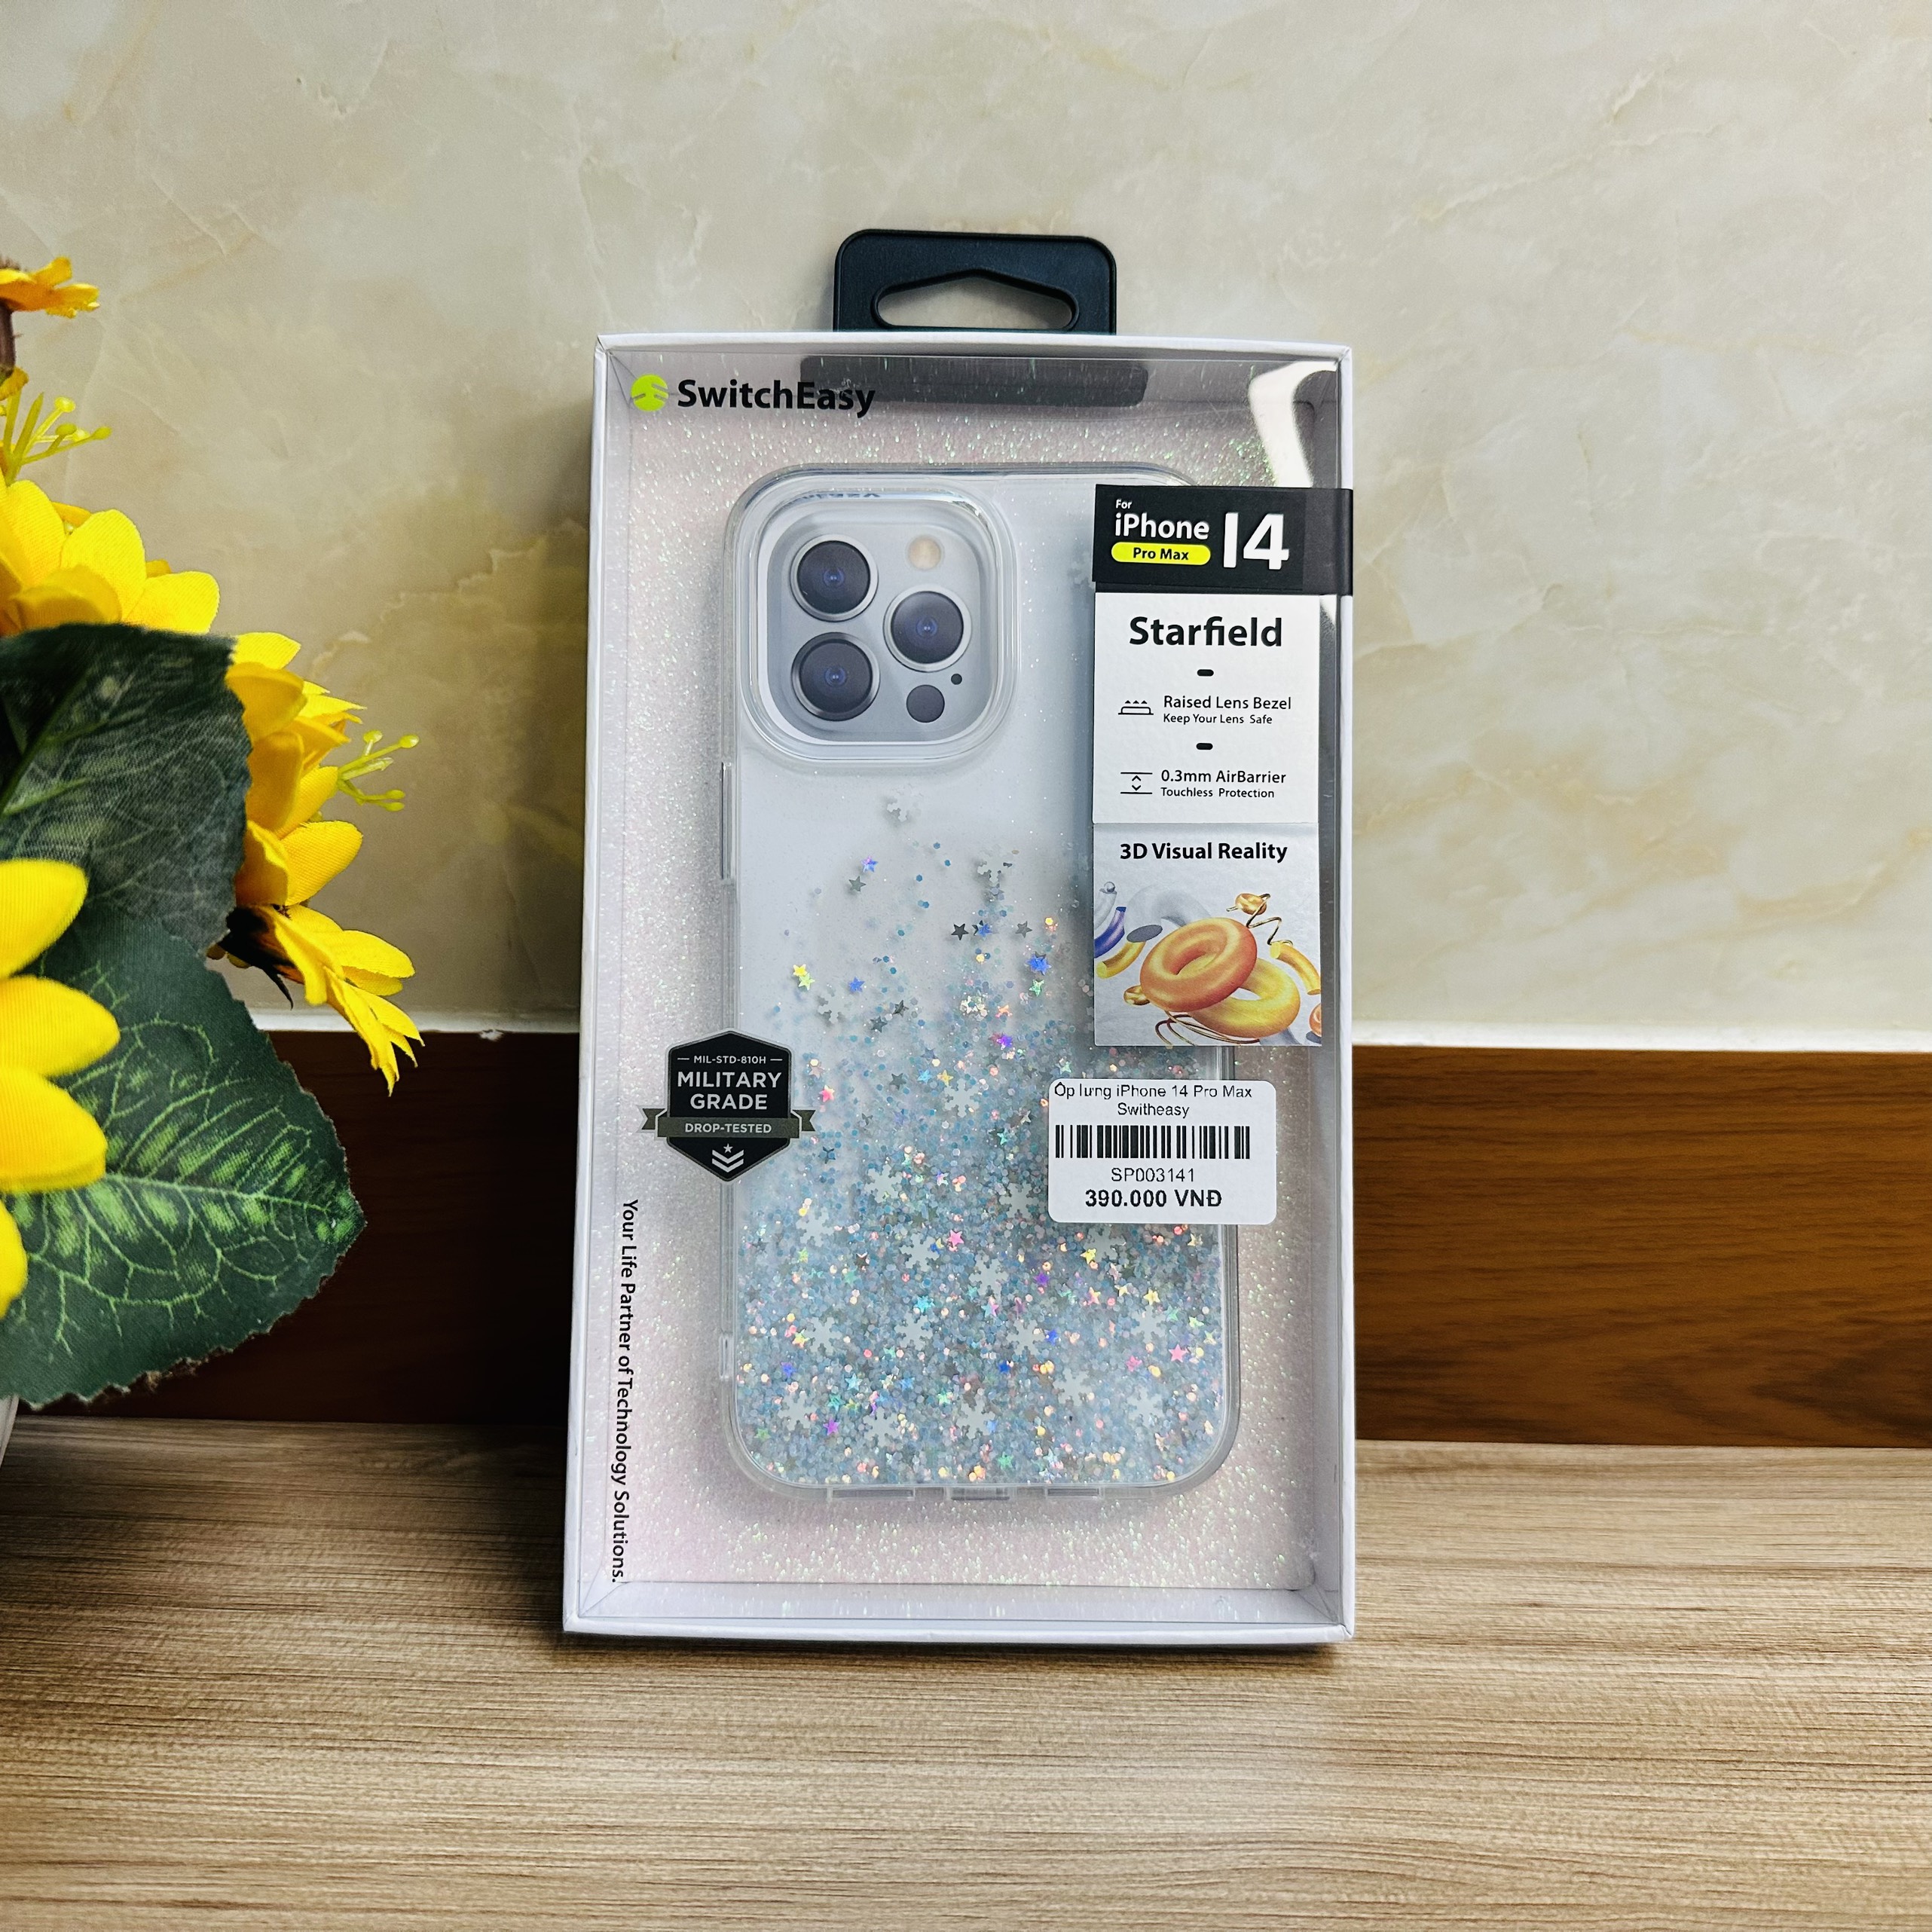 Ốp lưng dành cho iPhone 14 Pro Max Switcheasy hoa tuyết- Hàng chính hãng